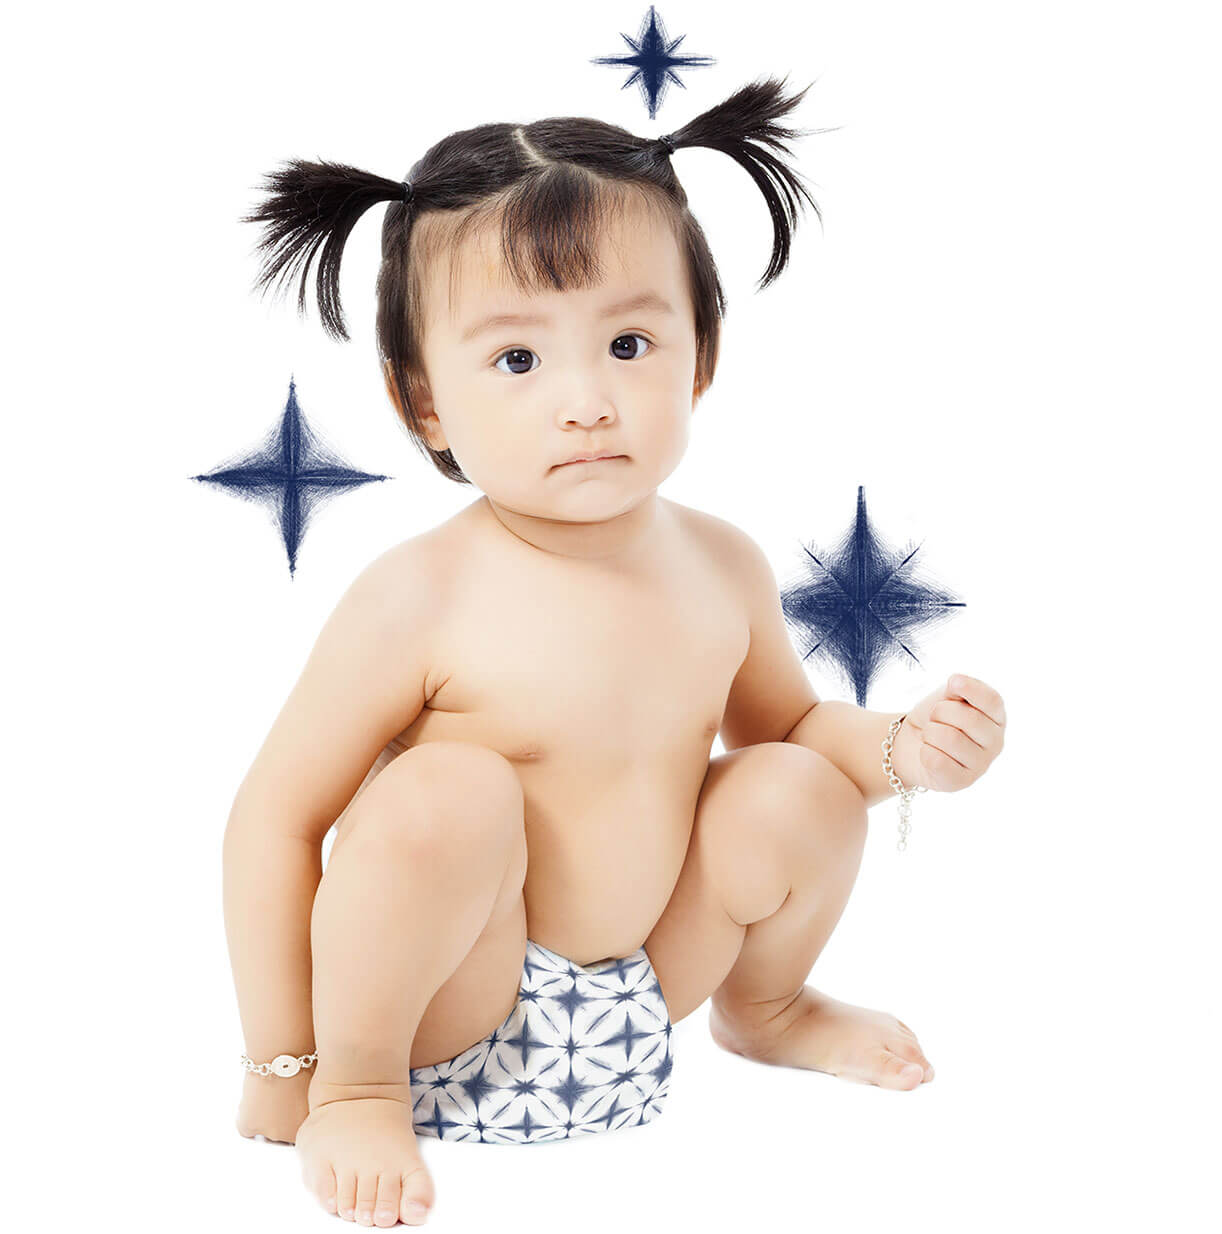 Baby wearing shibori pattern diapers